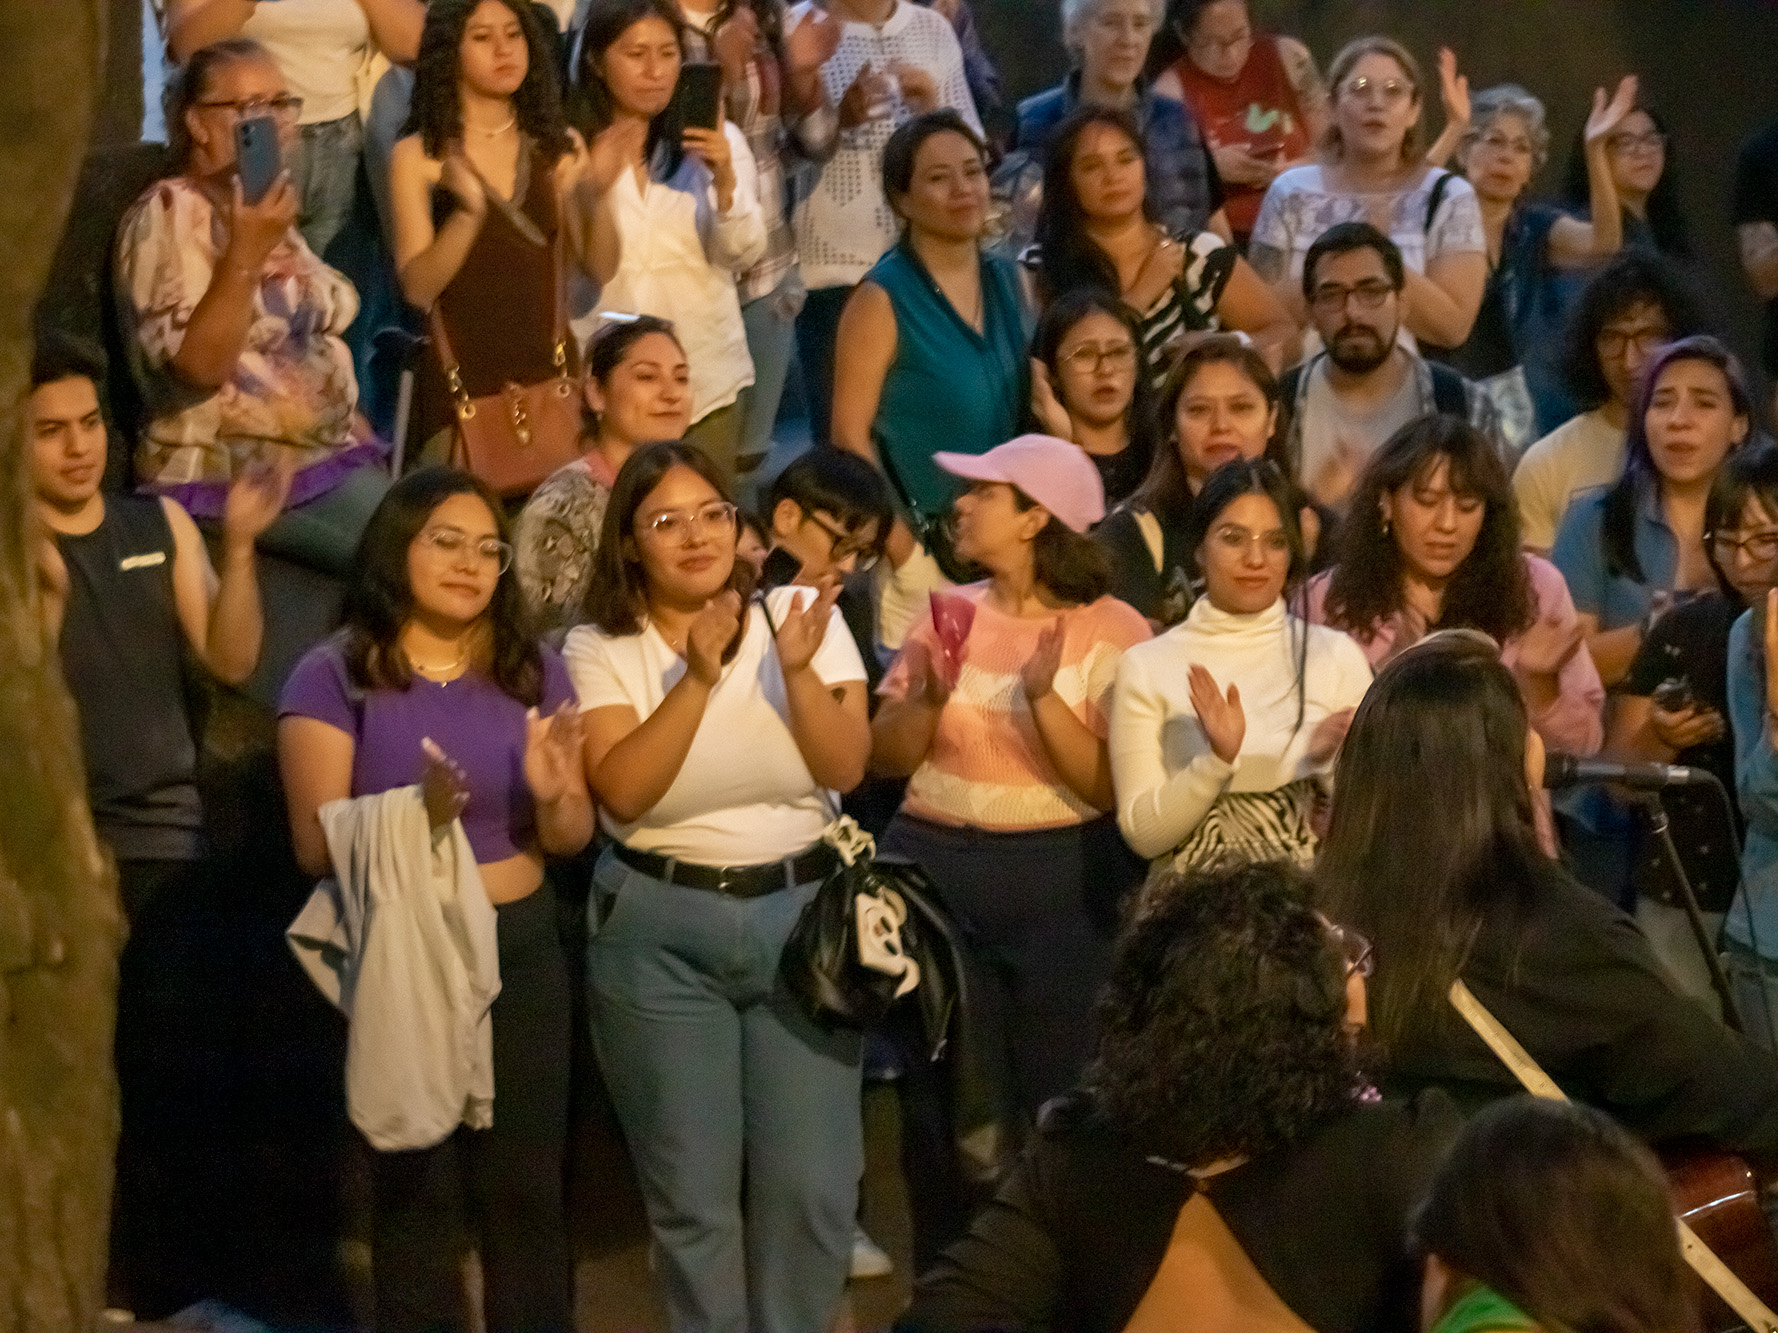 Frente al Monumento a la Revolución, la reconocida cantautora mexicana y destacada feminista Vivir Quintana ofreció un íntimo concierto acústico para mantener una cercanía especial con sus seguidores. Al momento, reafirmó su postura política a través de letras y estribillos como declaraciones musicales hacia las mujeres como la primera presidenta electa en México.